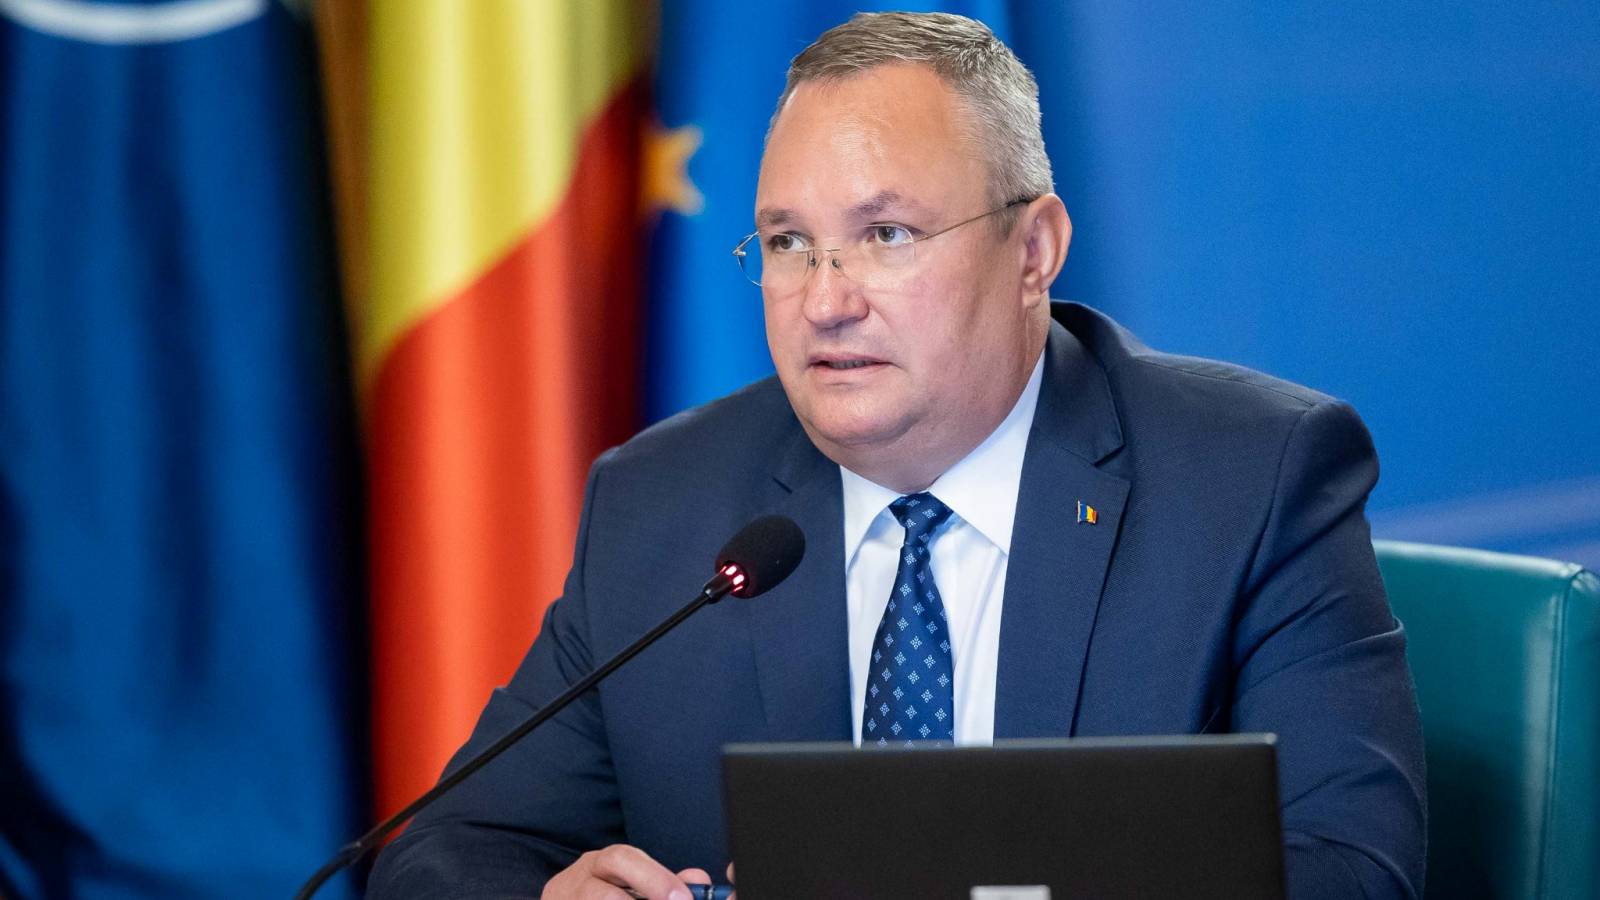 Nicolae Ciuca ilmoitti uusista hallituksen toimista Romaniassa